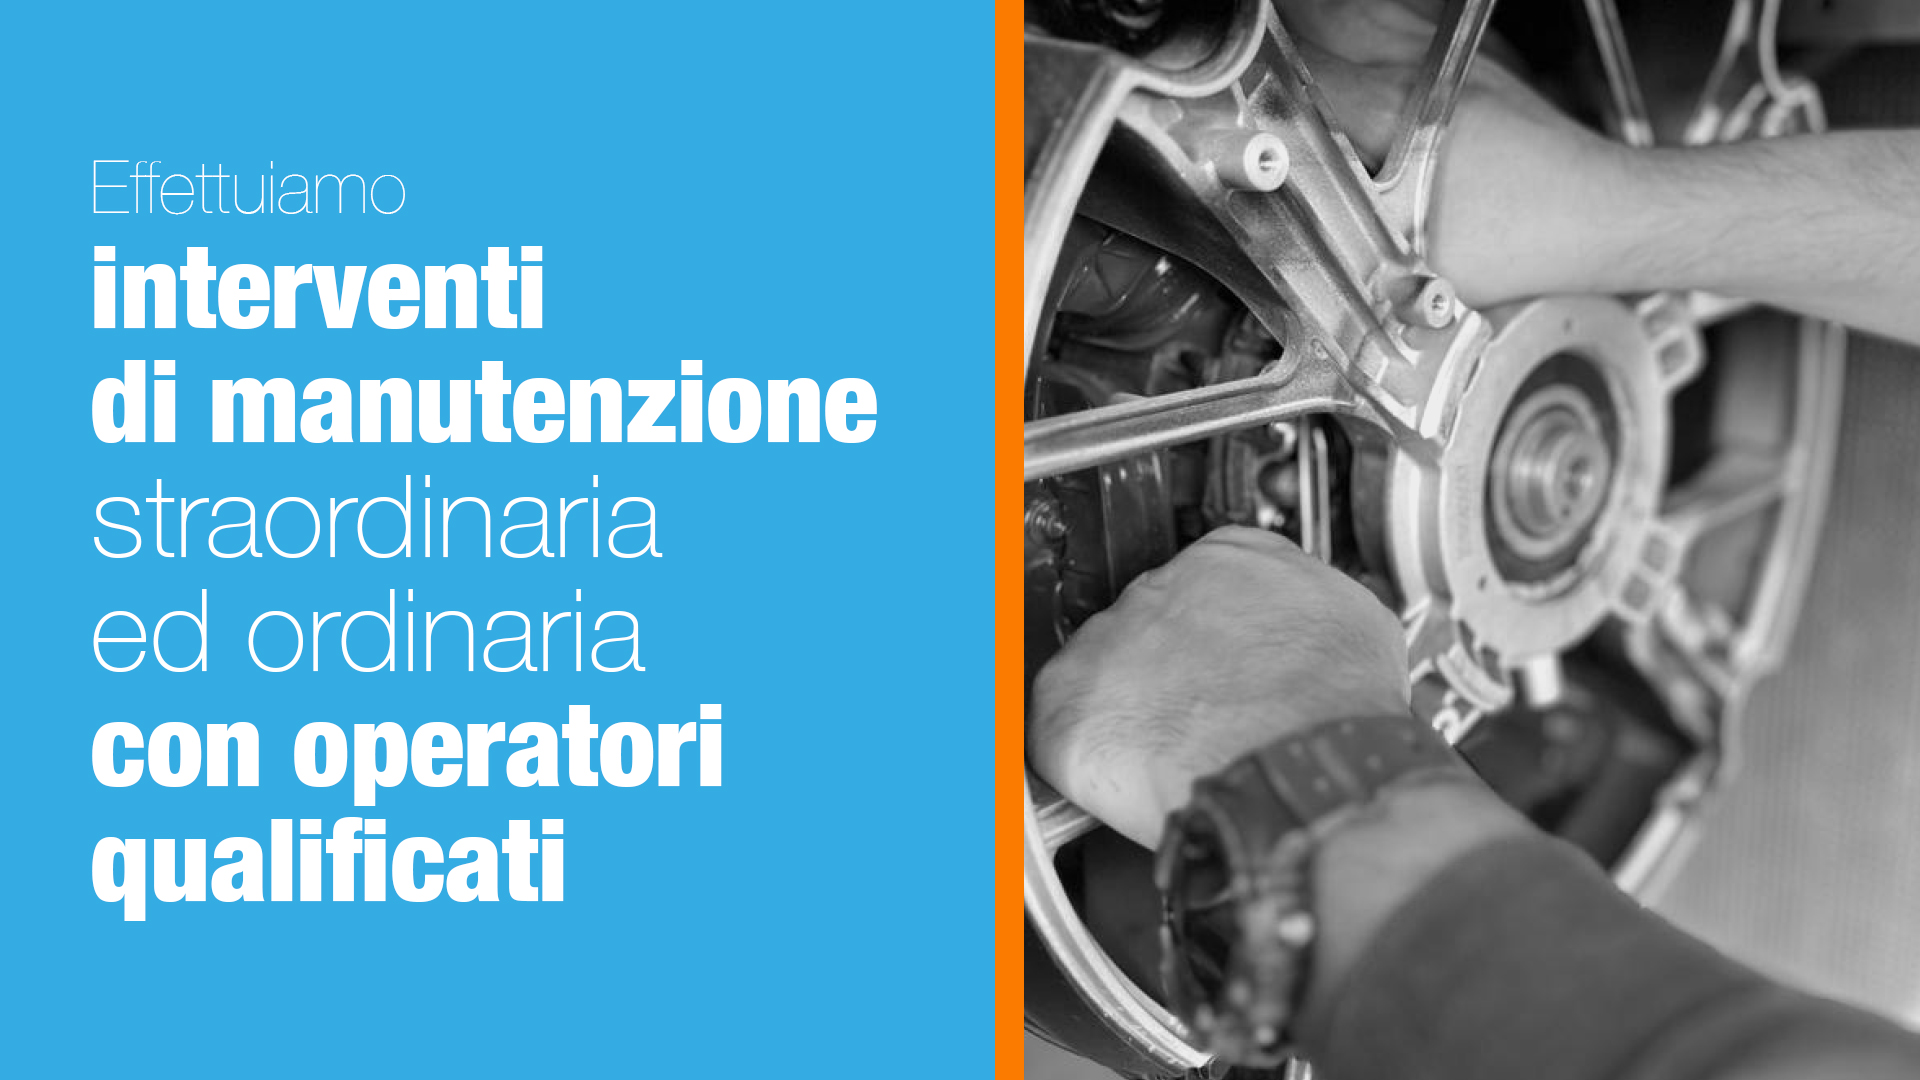 Azienda italiana che effettua la manutenzione ordinaria e straordinaria del generatore